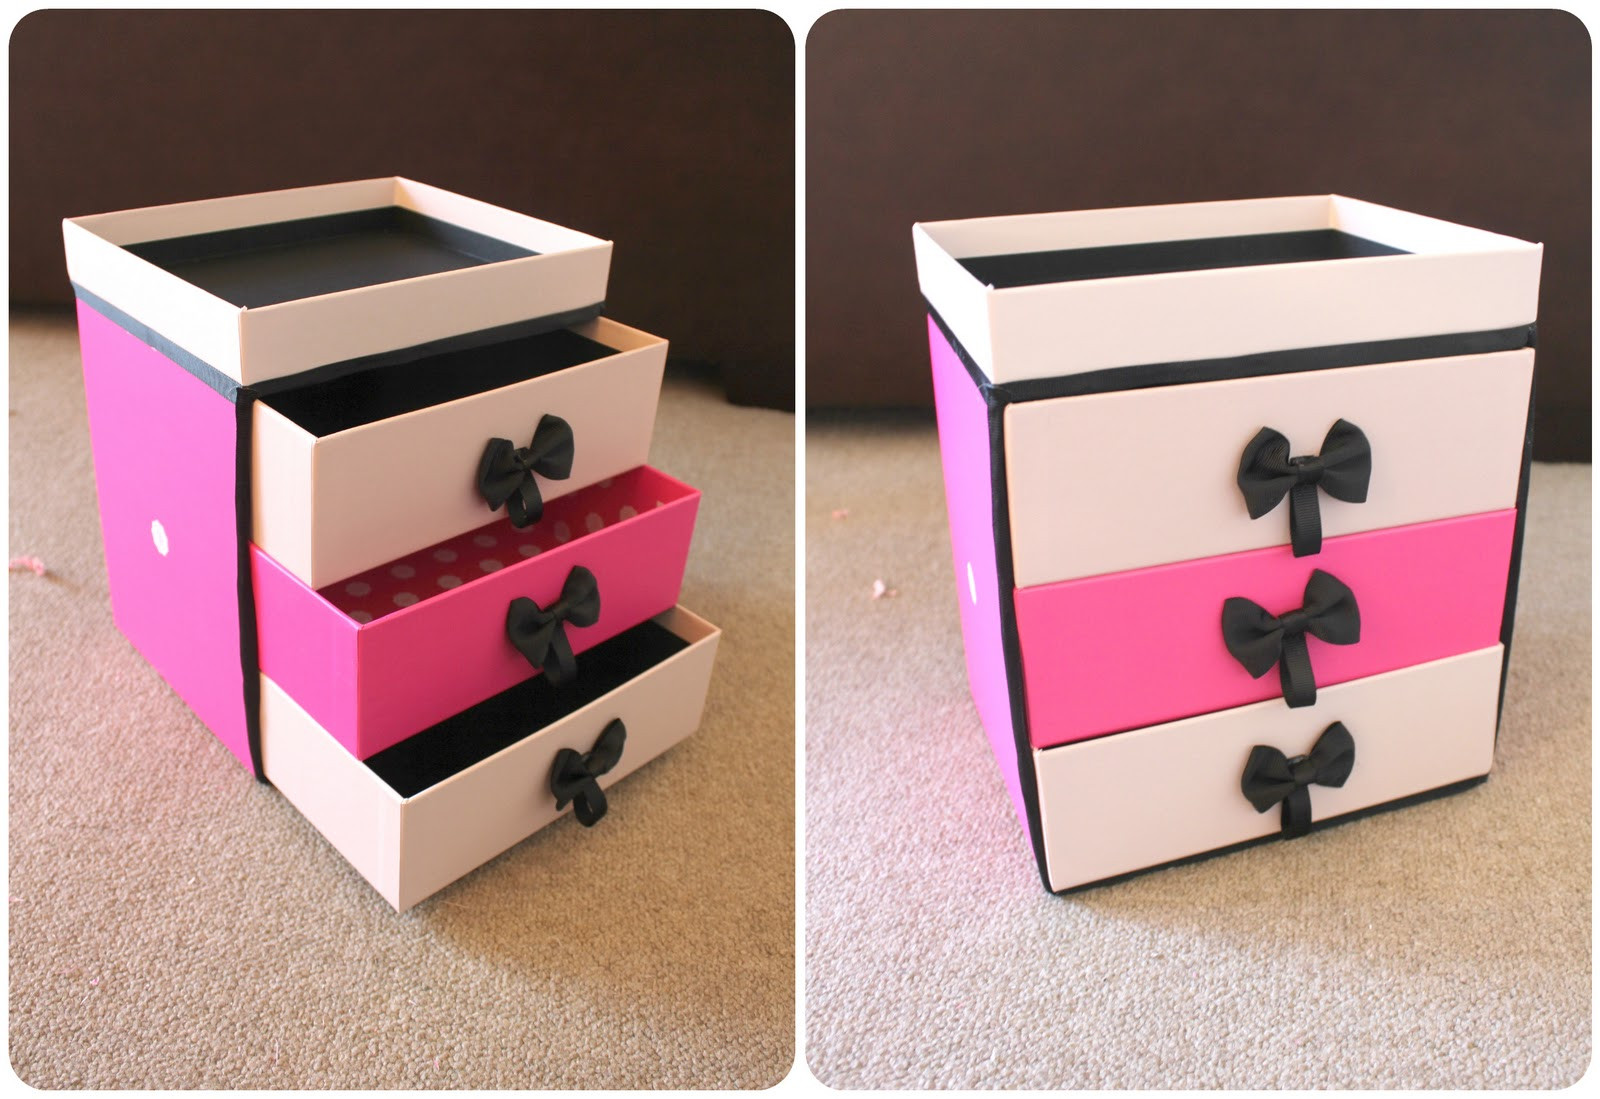 Best ideas about DIY Storage Box
. Save or Pin Peachfizzz DIY Make Up Storage Now.